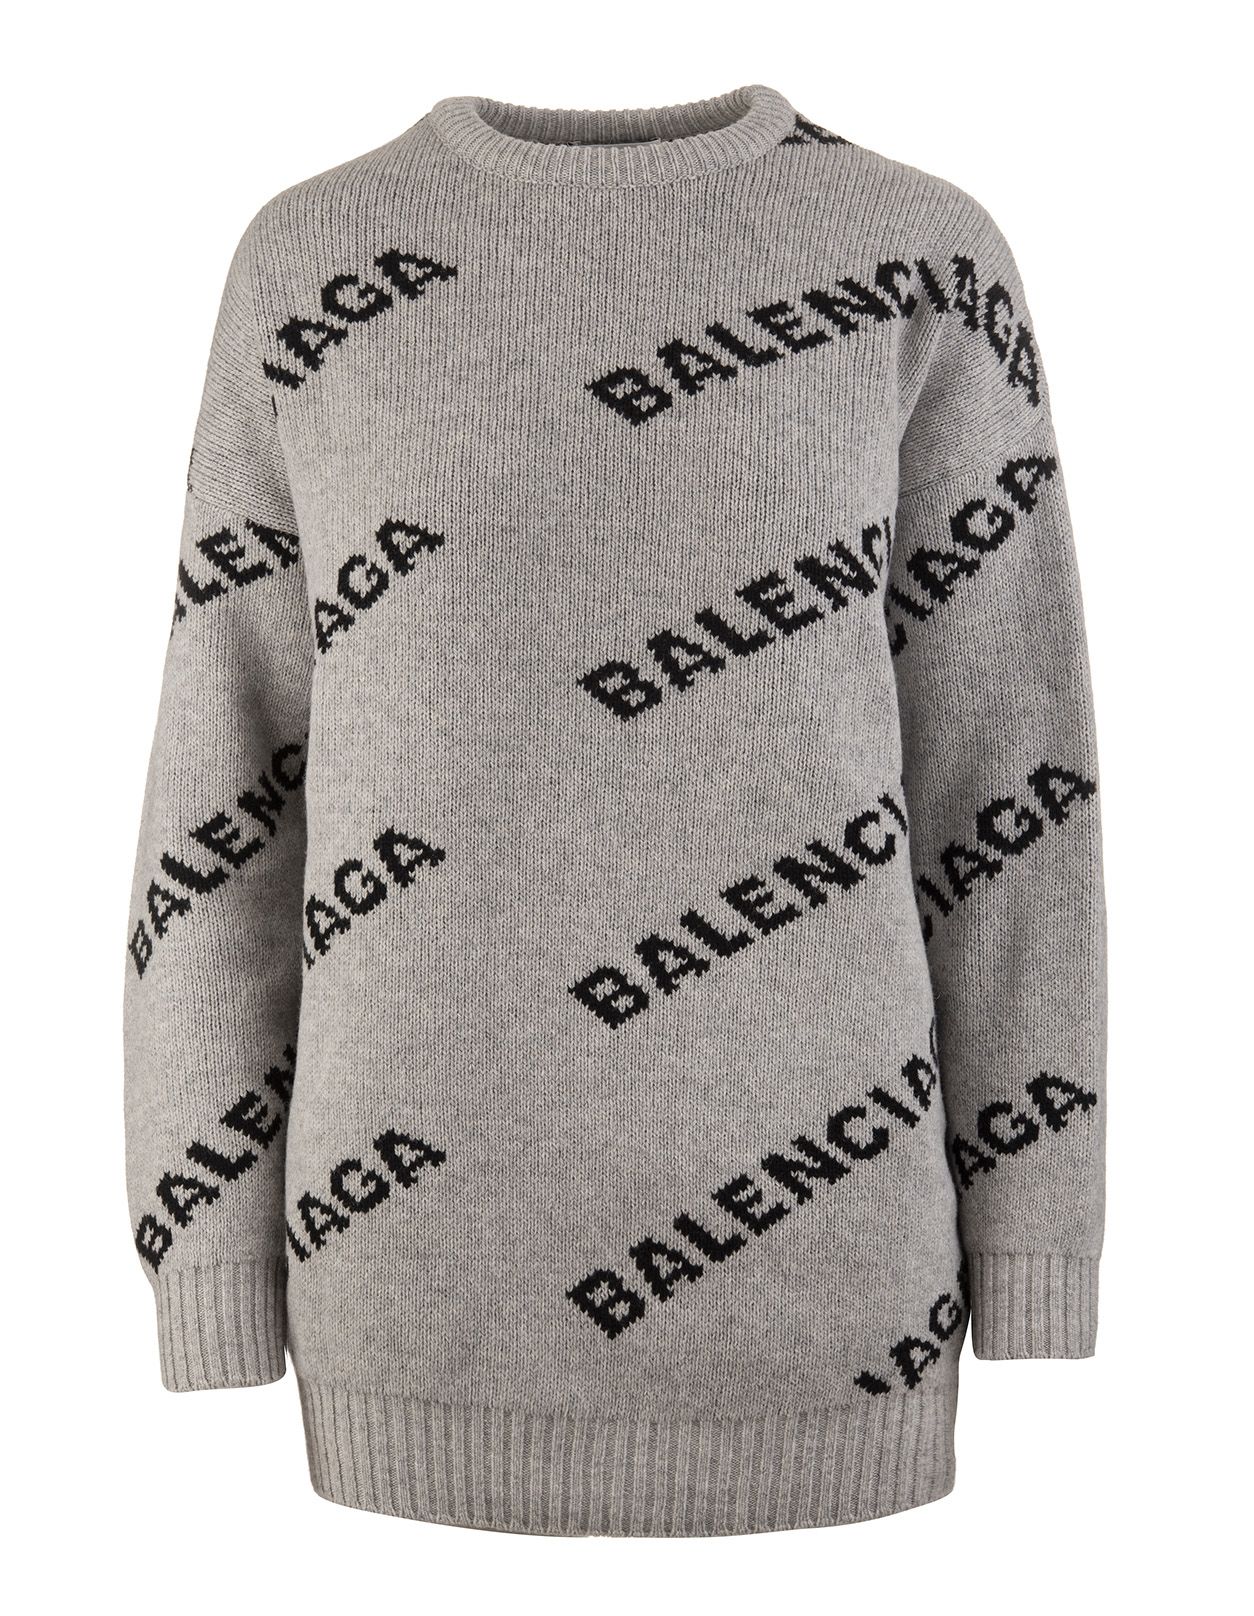 balenciaga sweater grey